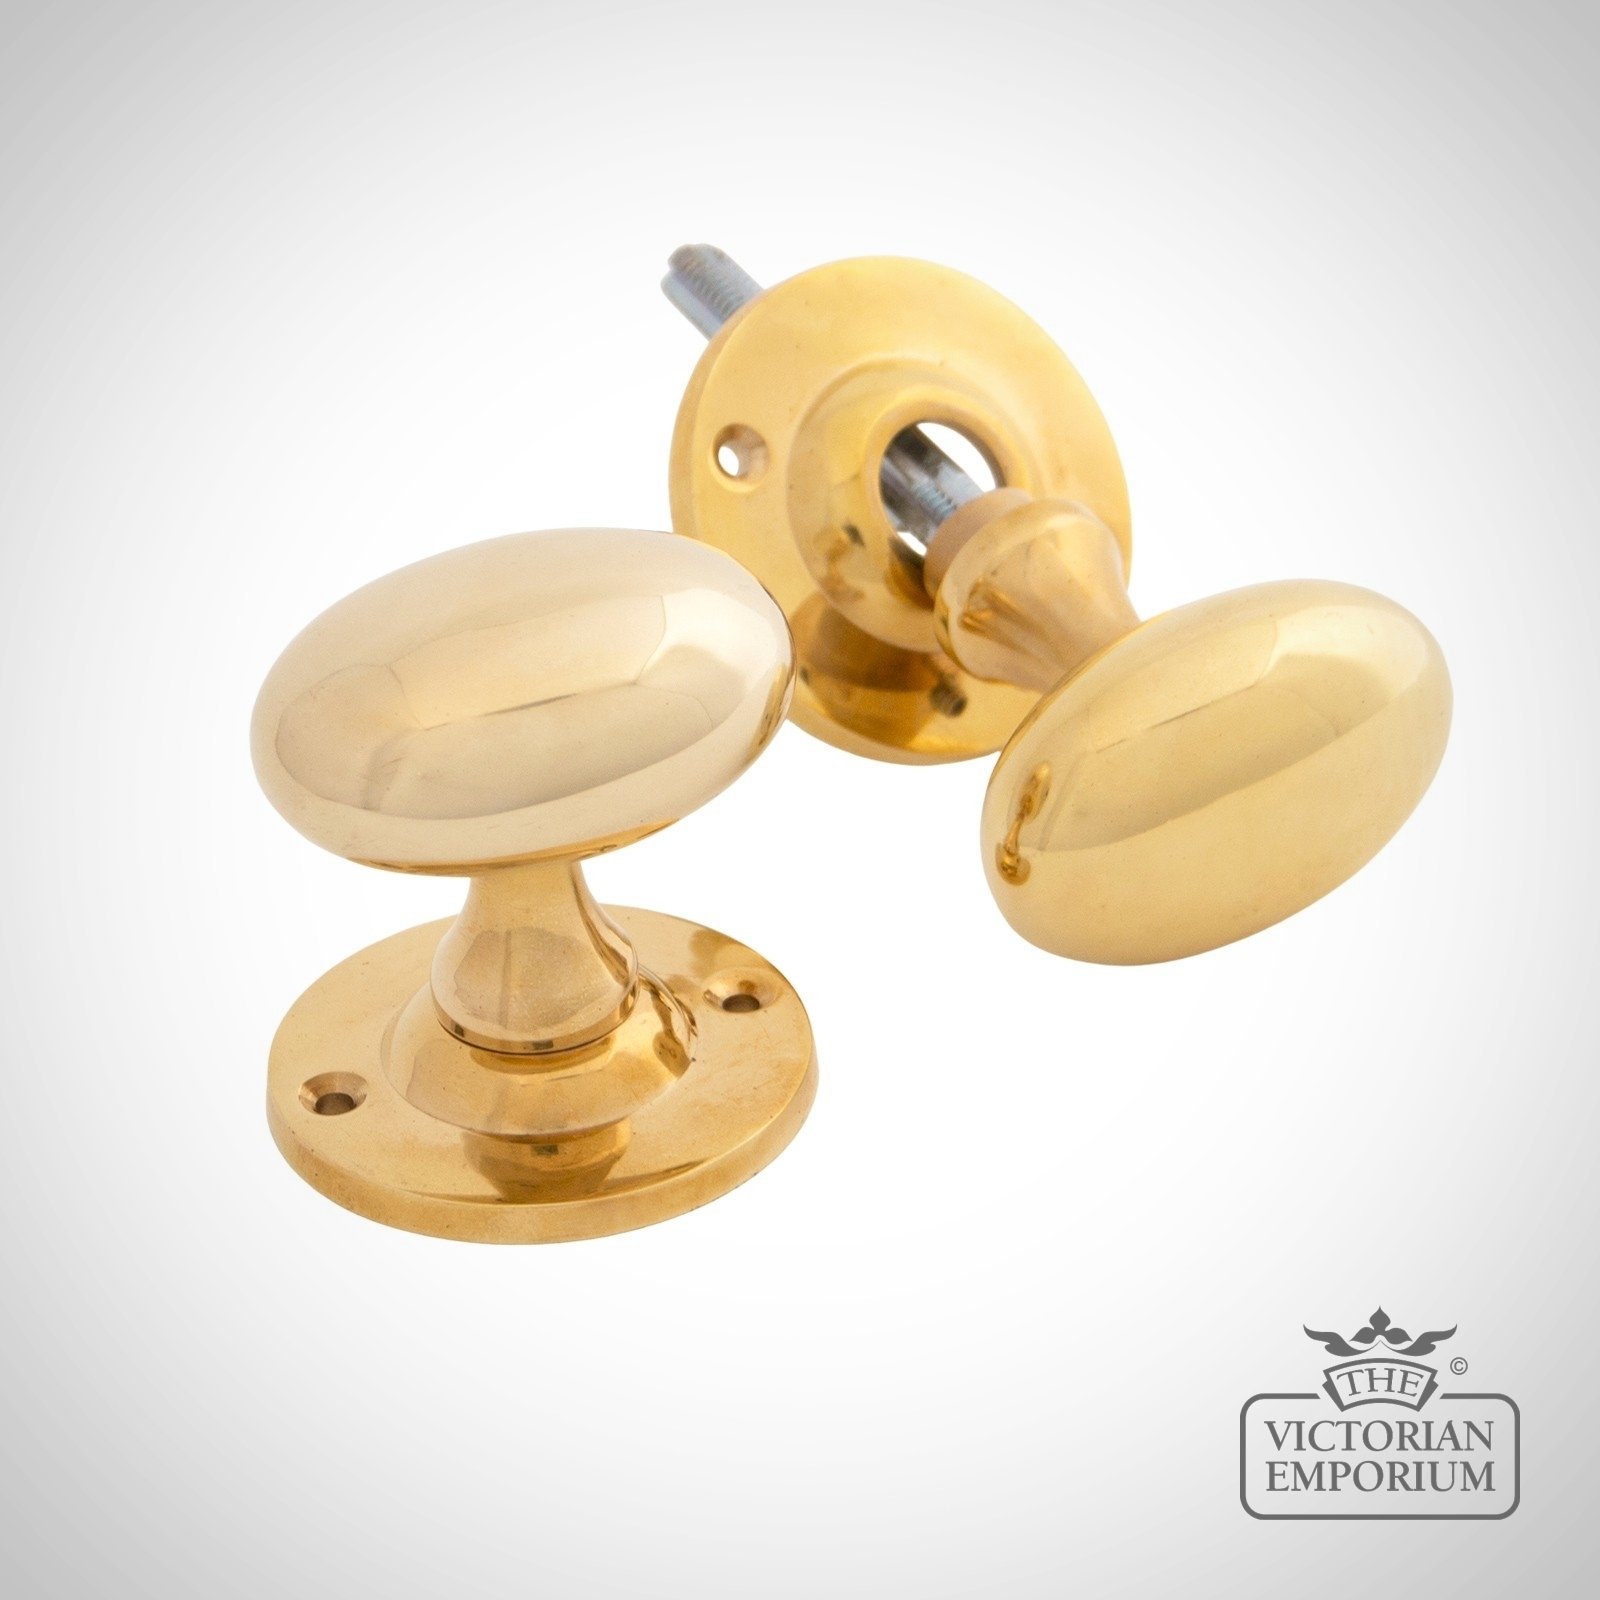 Oval Mortice/Rim Knob Set - Polished Brass